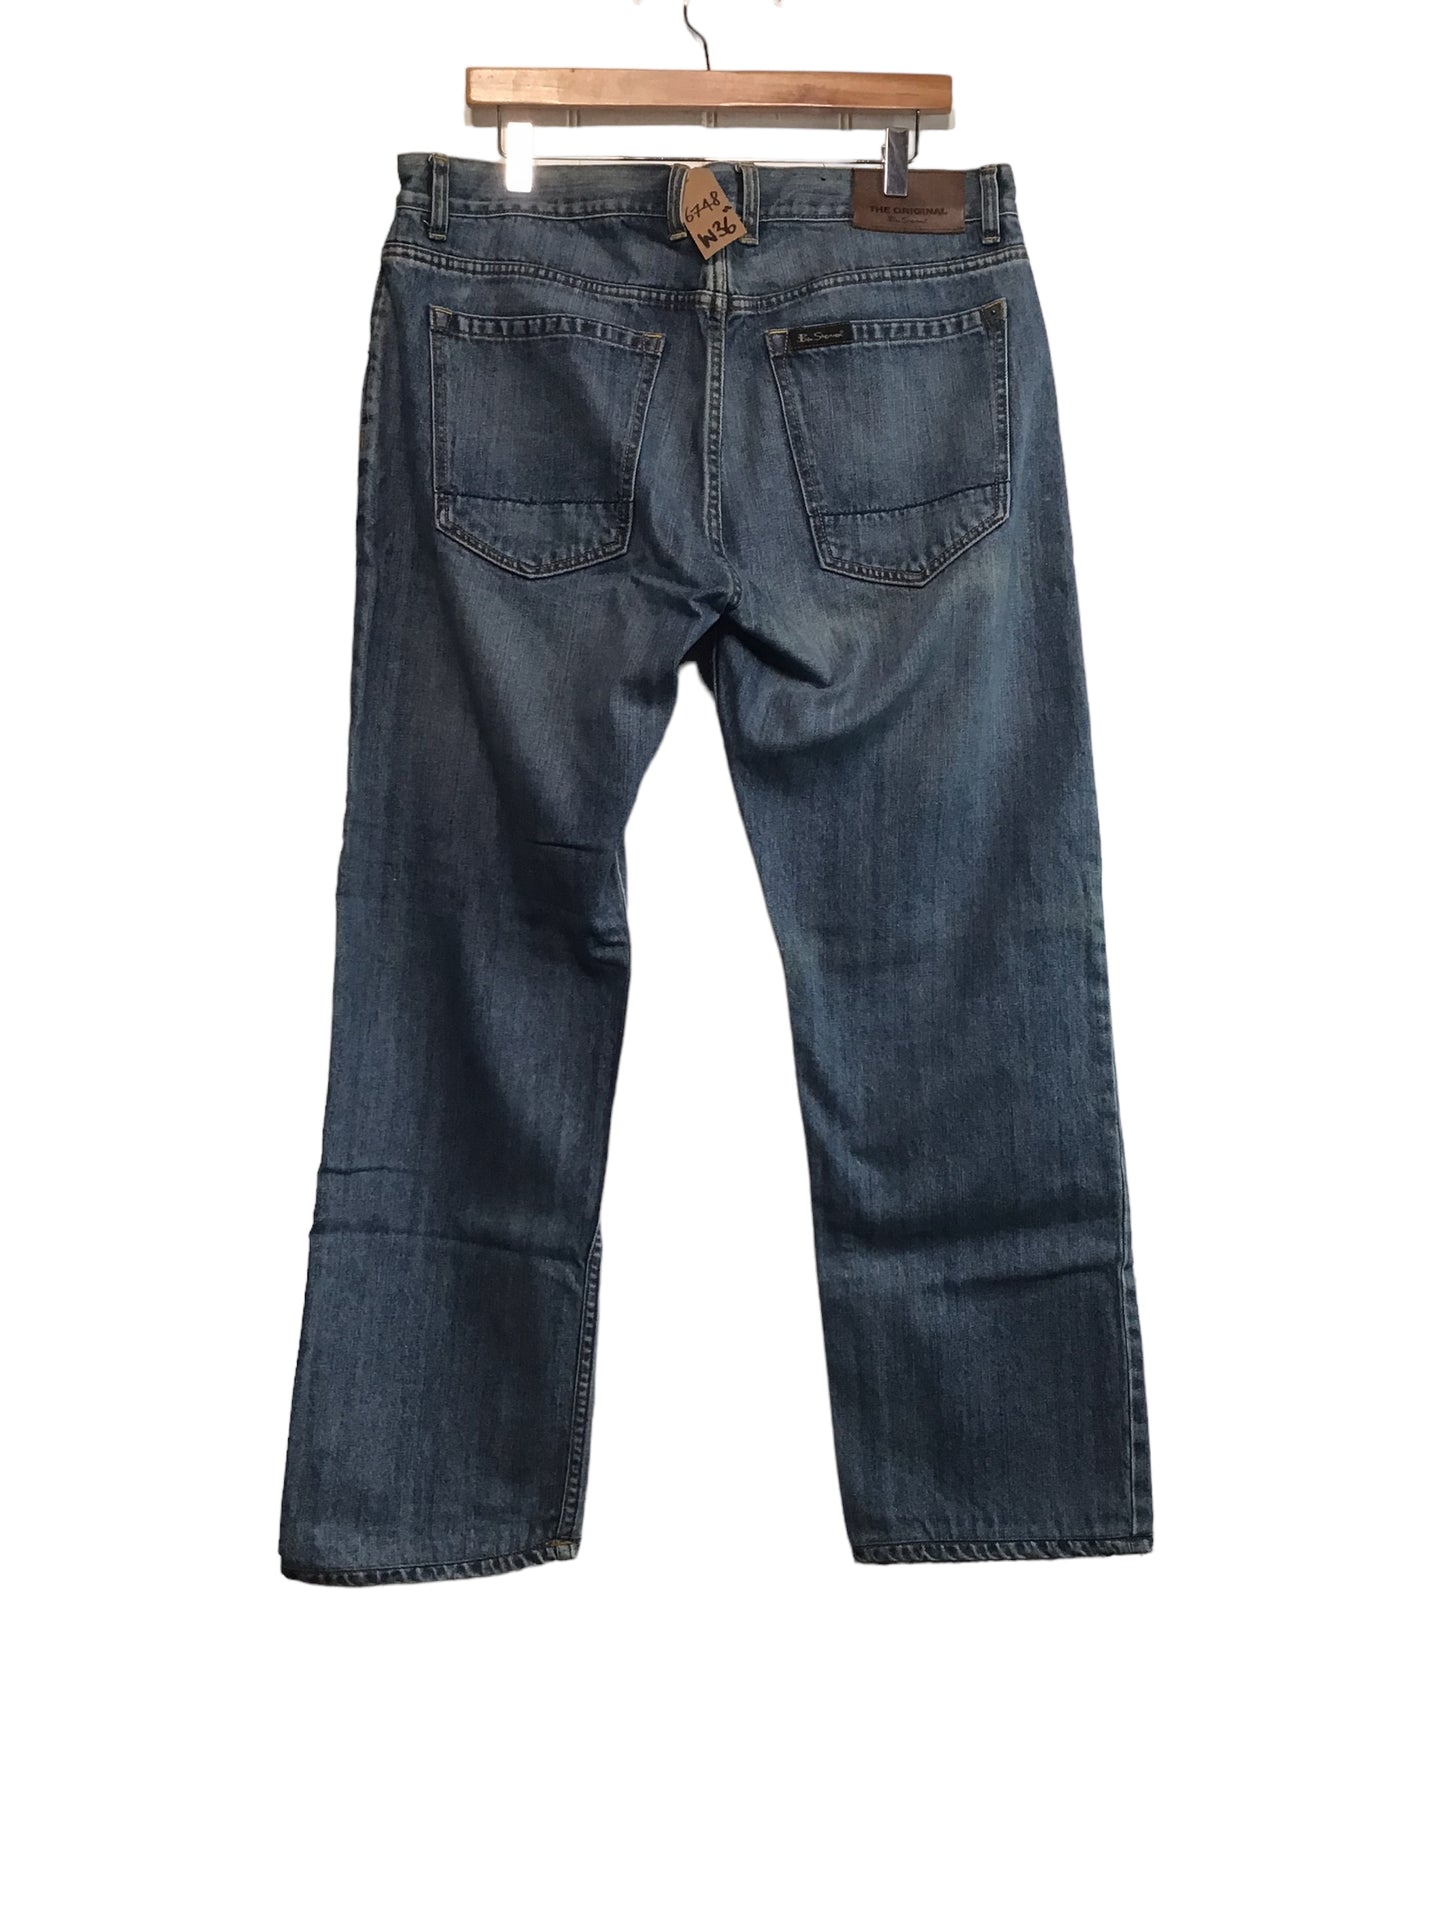 The Original Ben Sherman Jeans (36x29)